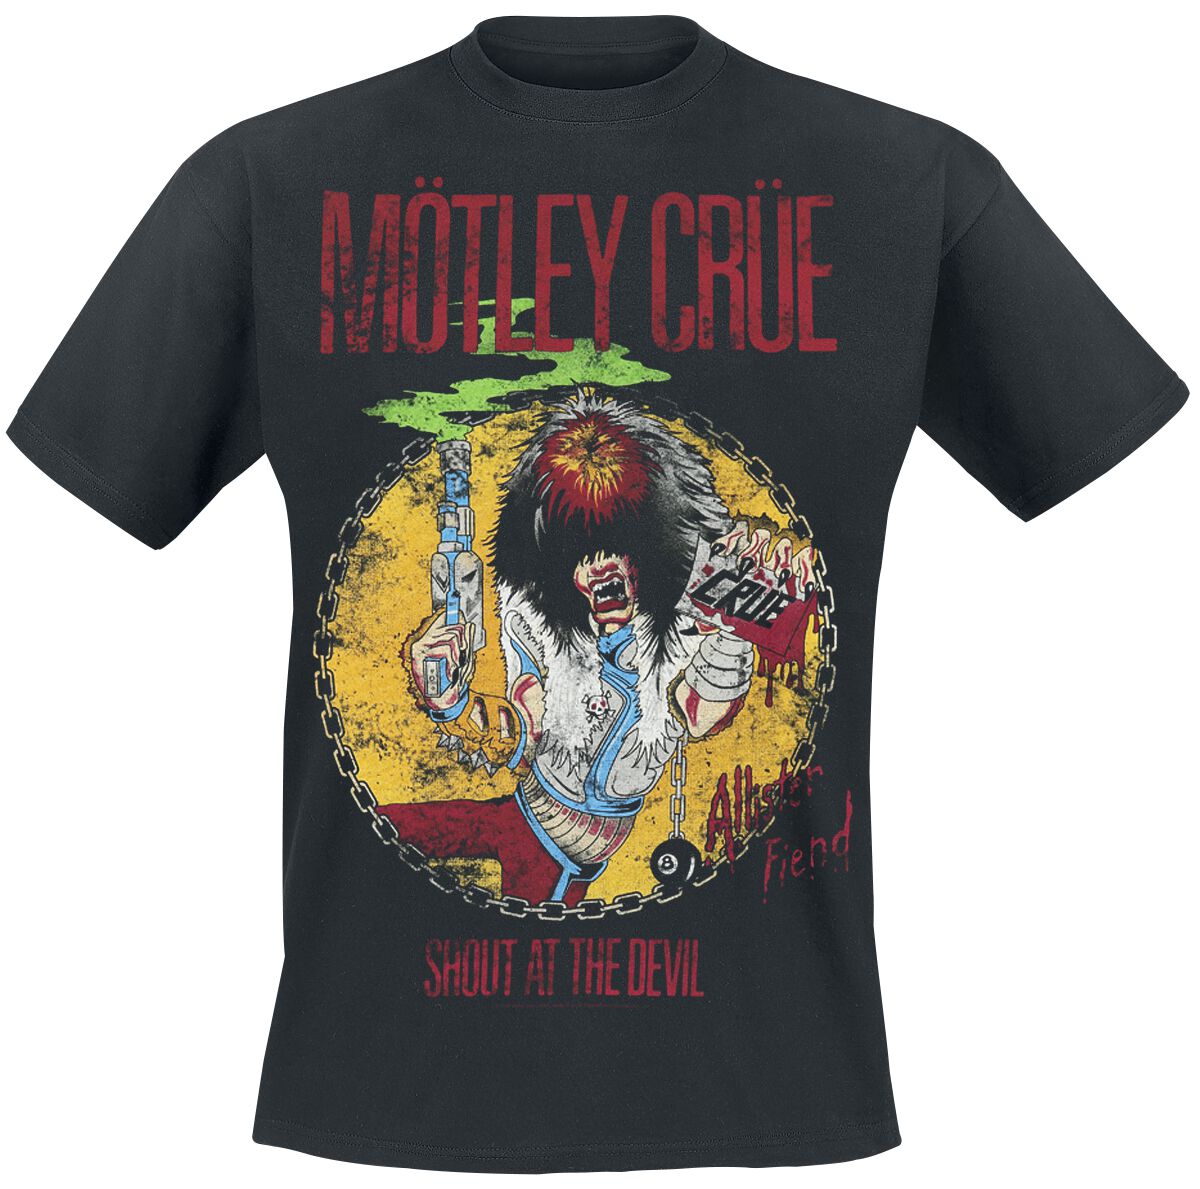 Mötley Crüe T-Shirt - Shout At The Devil - S bis XXL - für Männer - Größe L - schwarz  - Lizenziertes Merchandise!